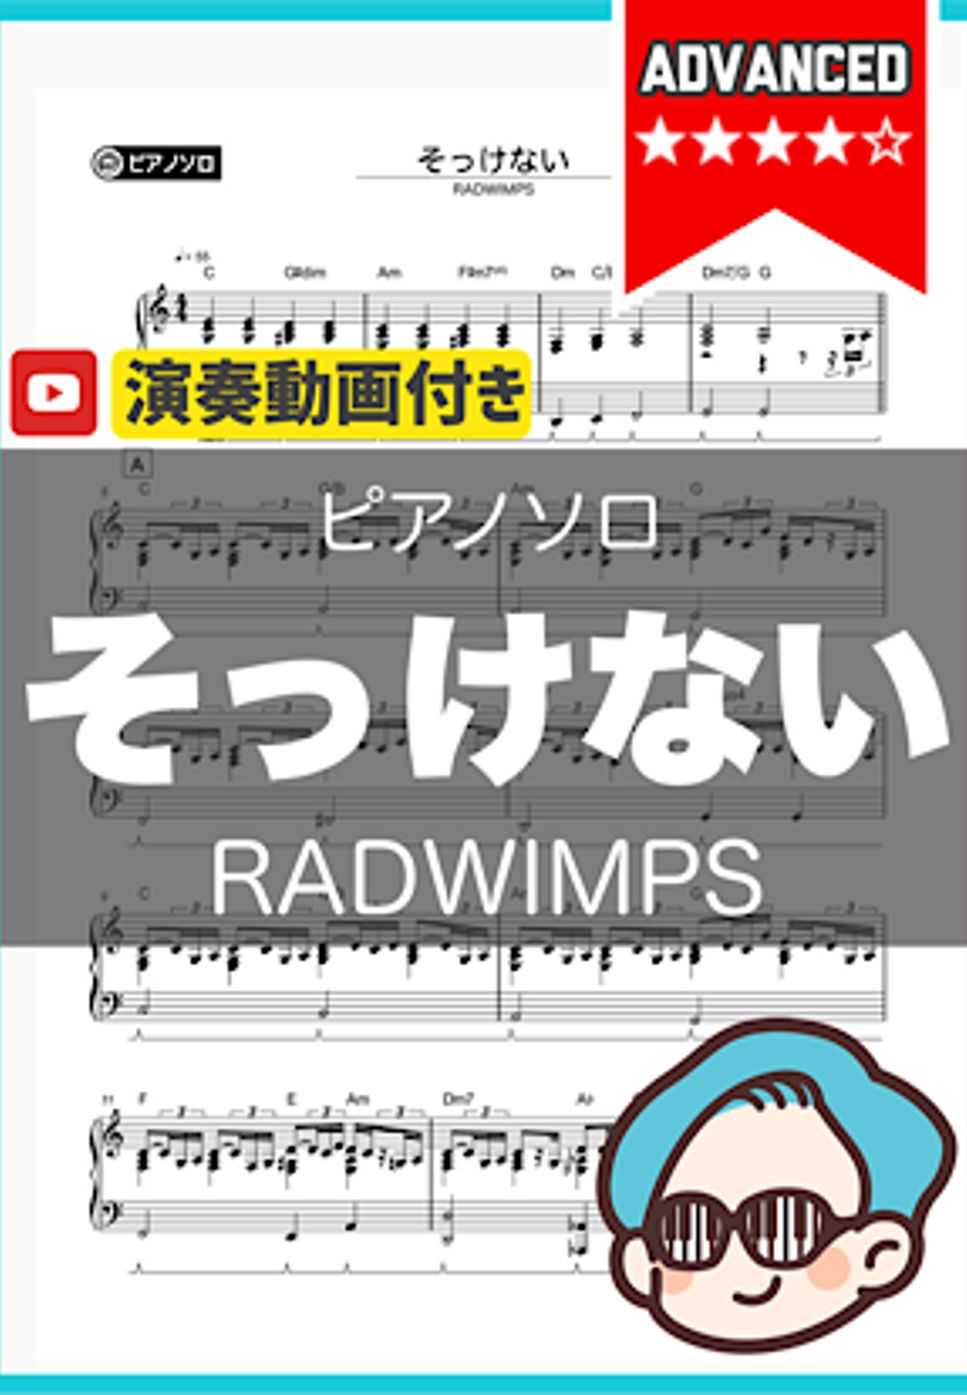 RADWIMPS - そっけない by シータピアノ